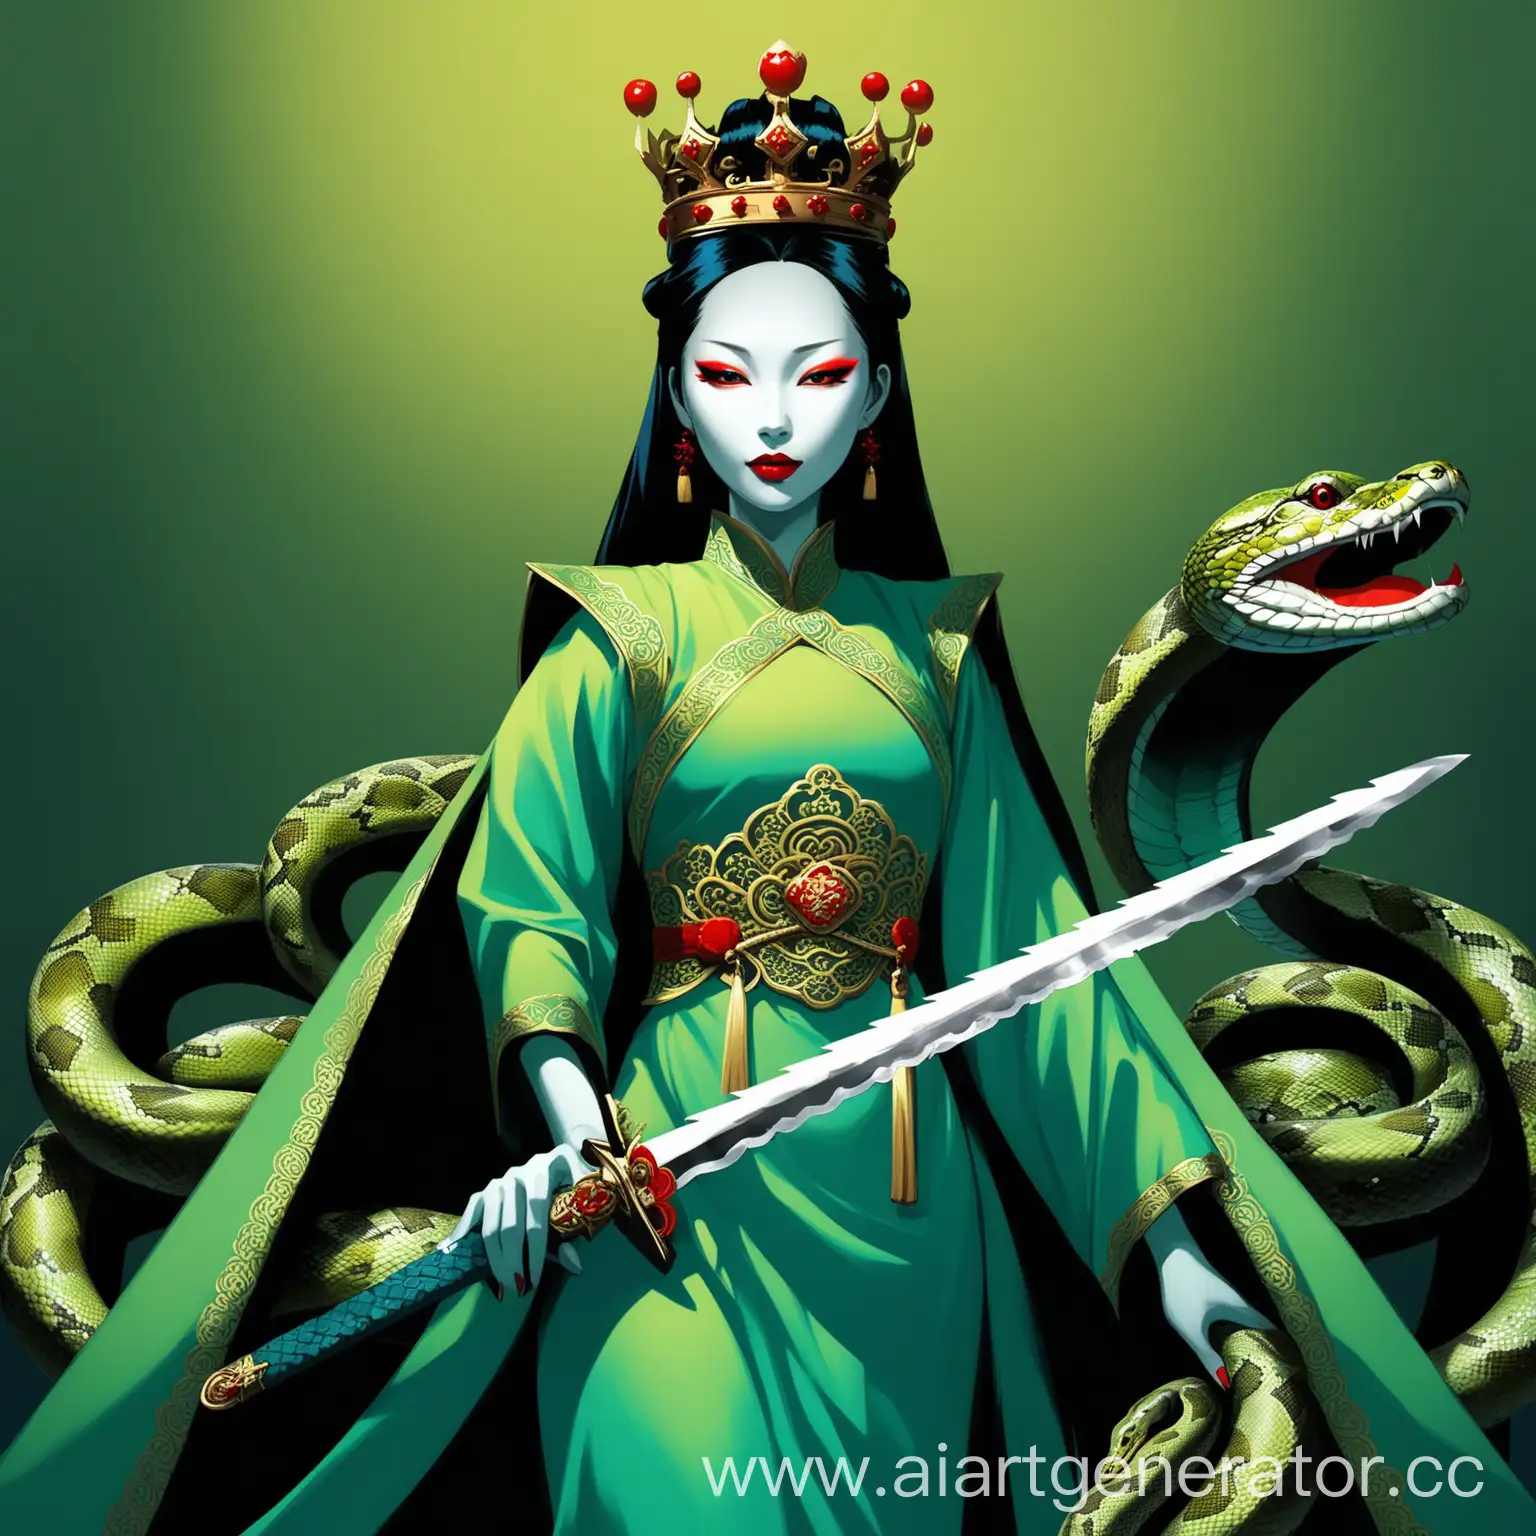 ее изображают как китаянку в синих или зеленых одеждах, с короной, мечем и с ярким макияжем, красными губами и обширными тенями того же цвета, рядом с которой питон